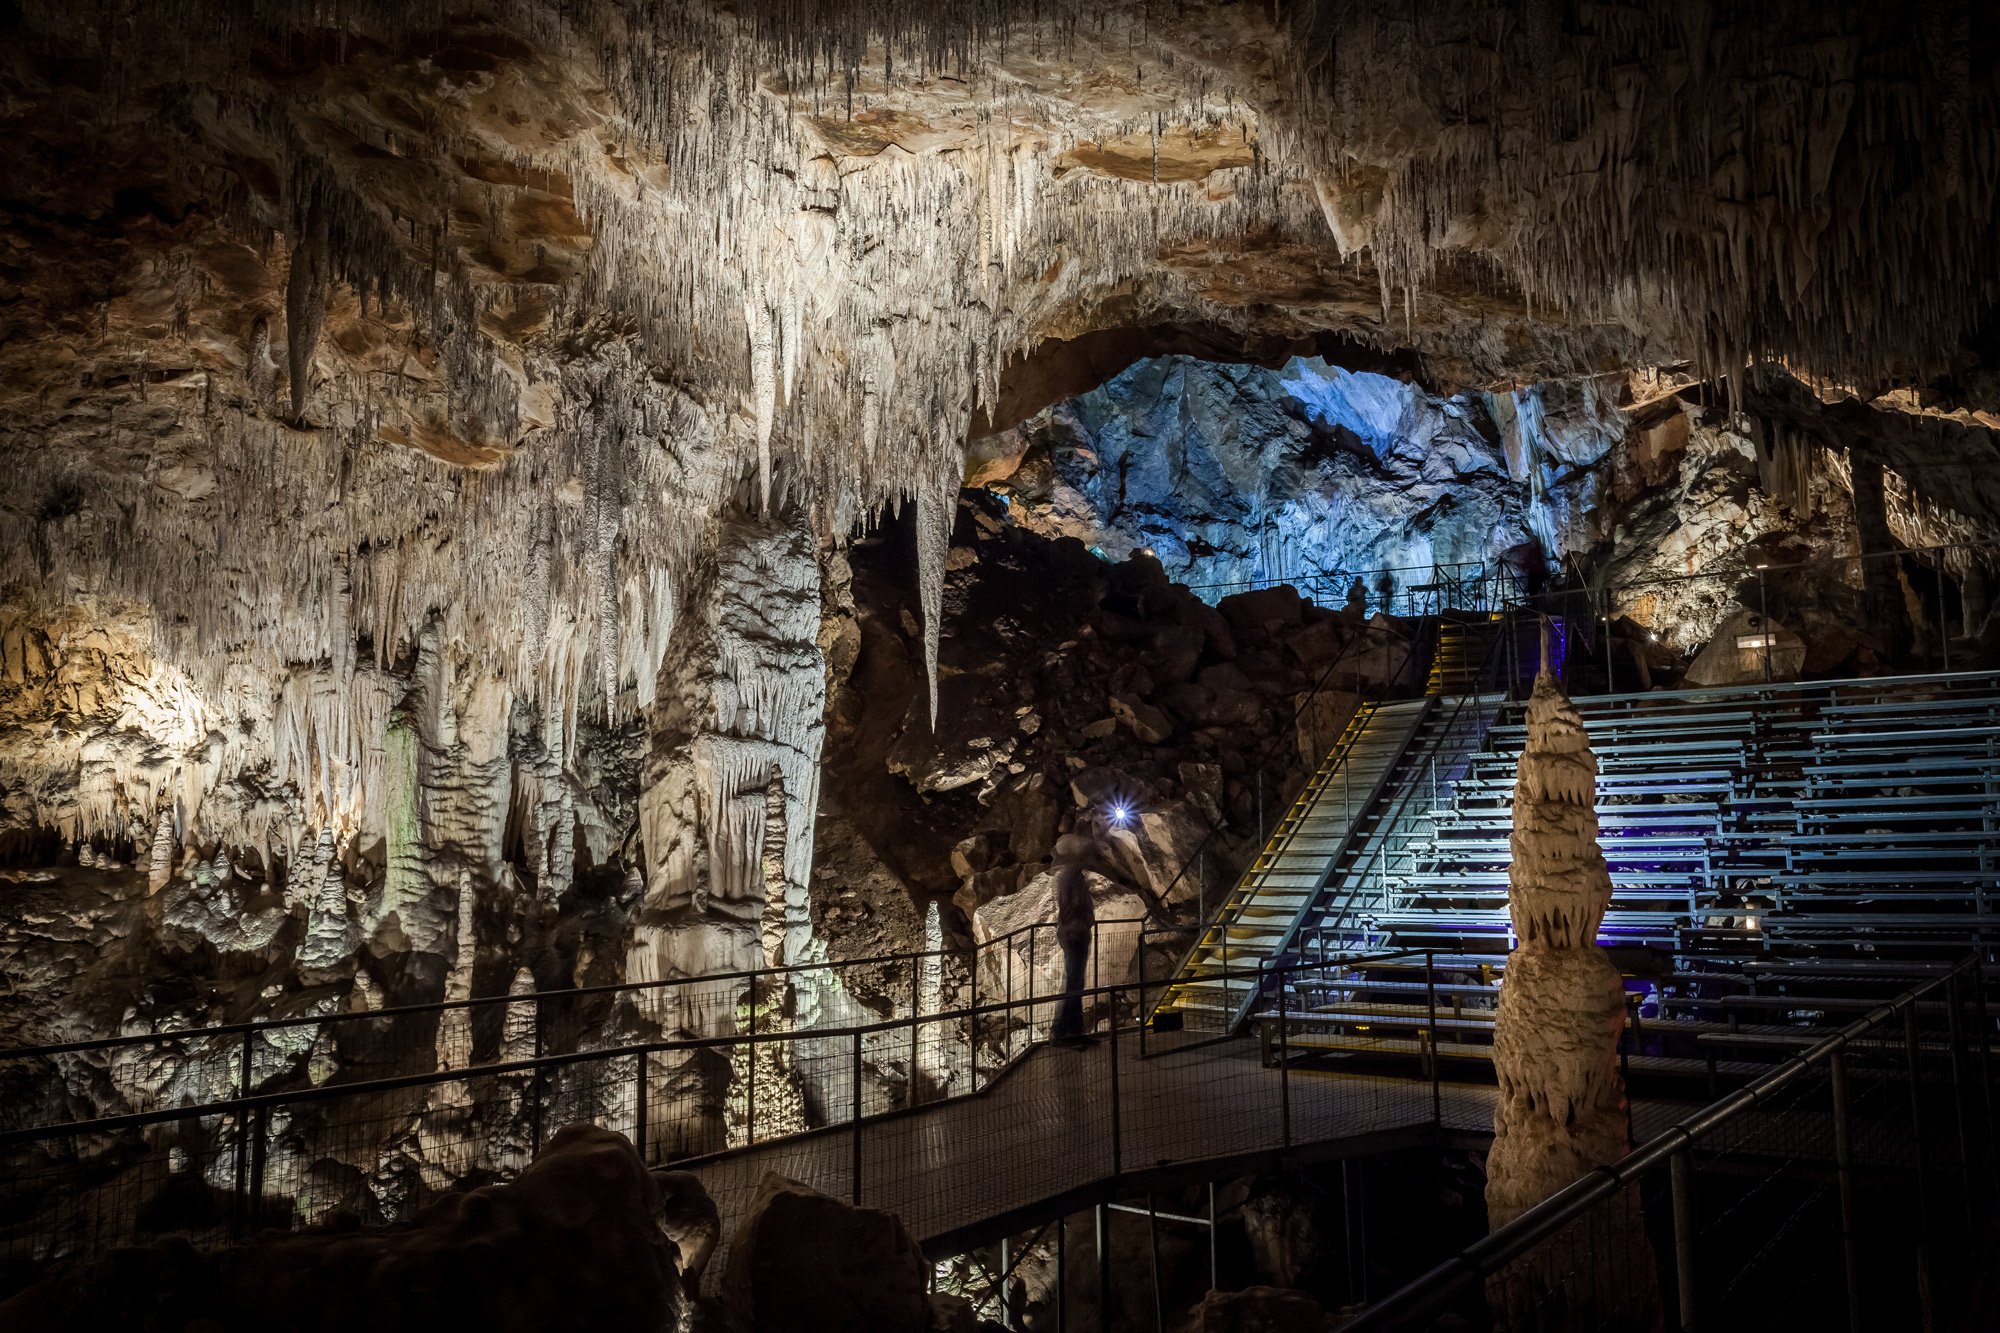 histoire du tourisme souterrain visite-tourisme-grotte-des-grandes-canalettes-pyrenees-orientales